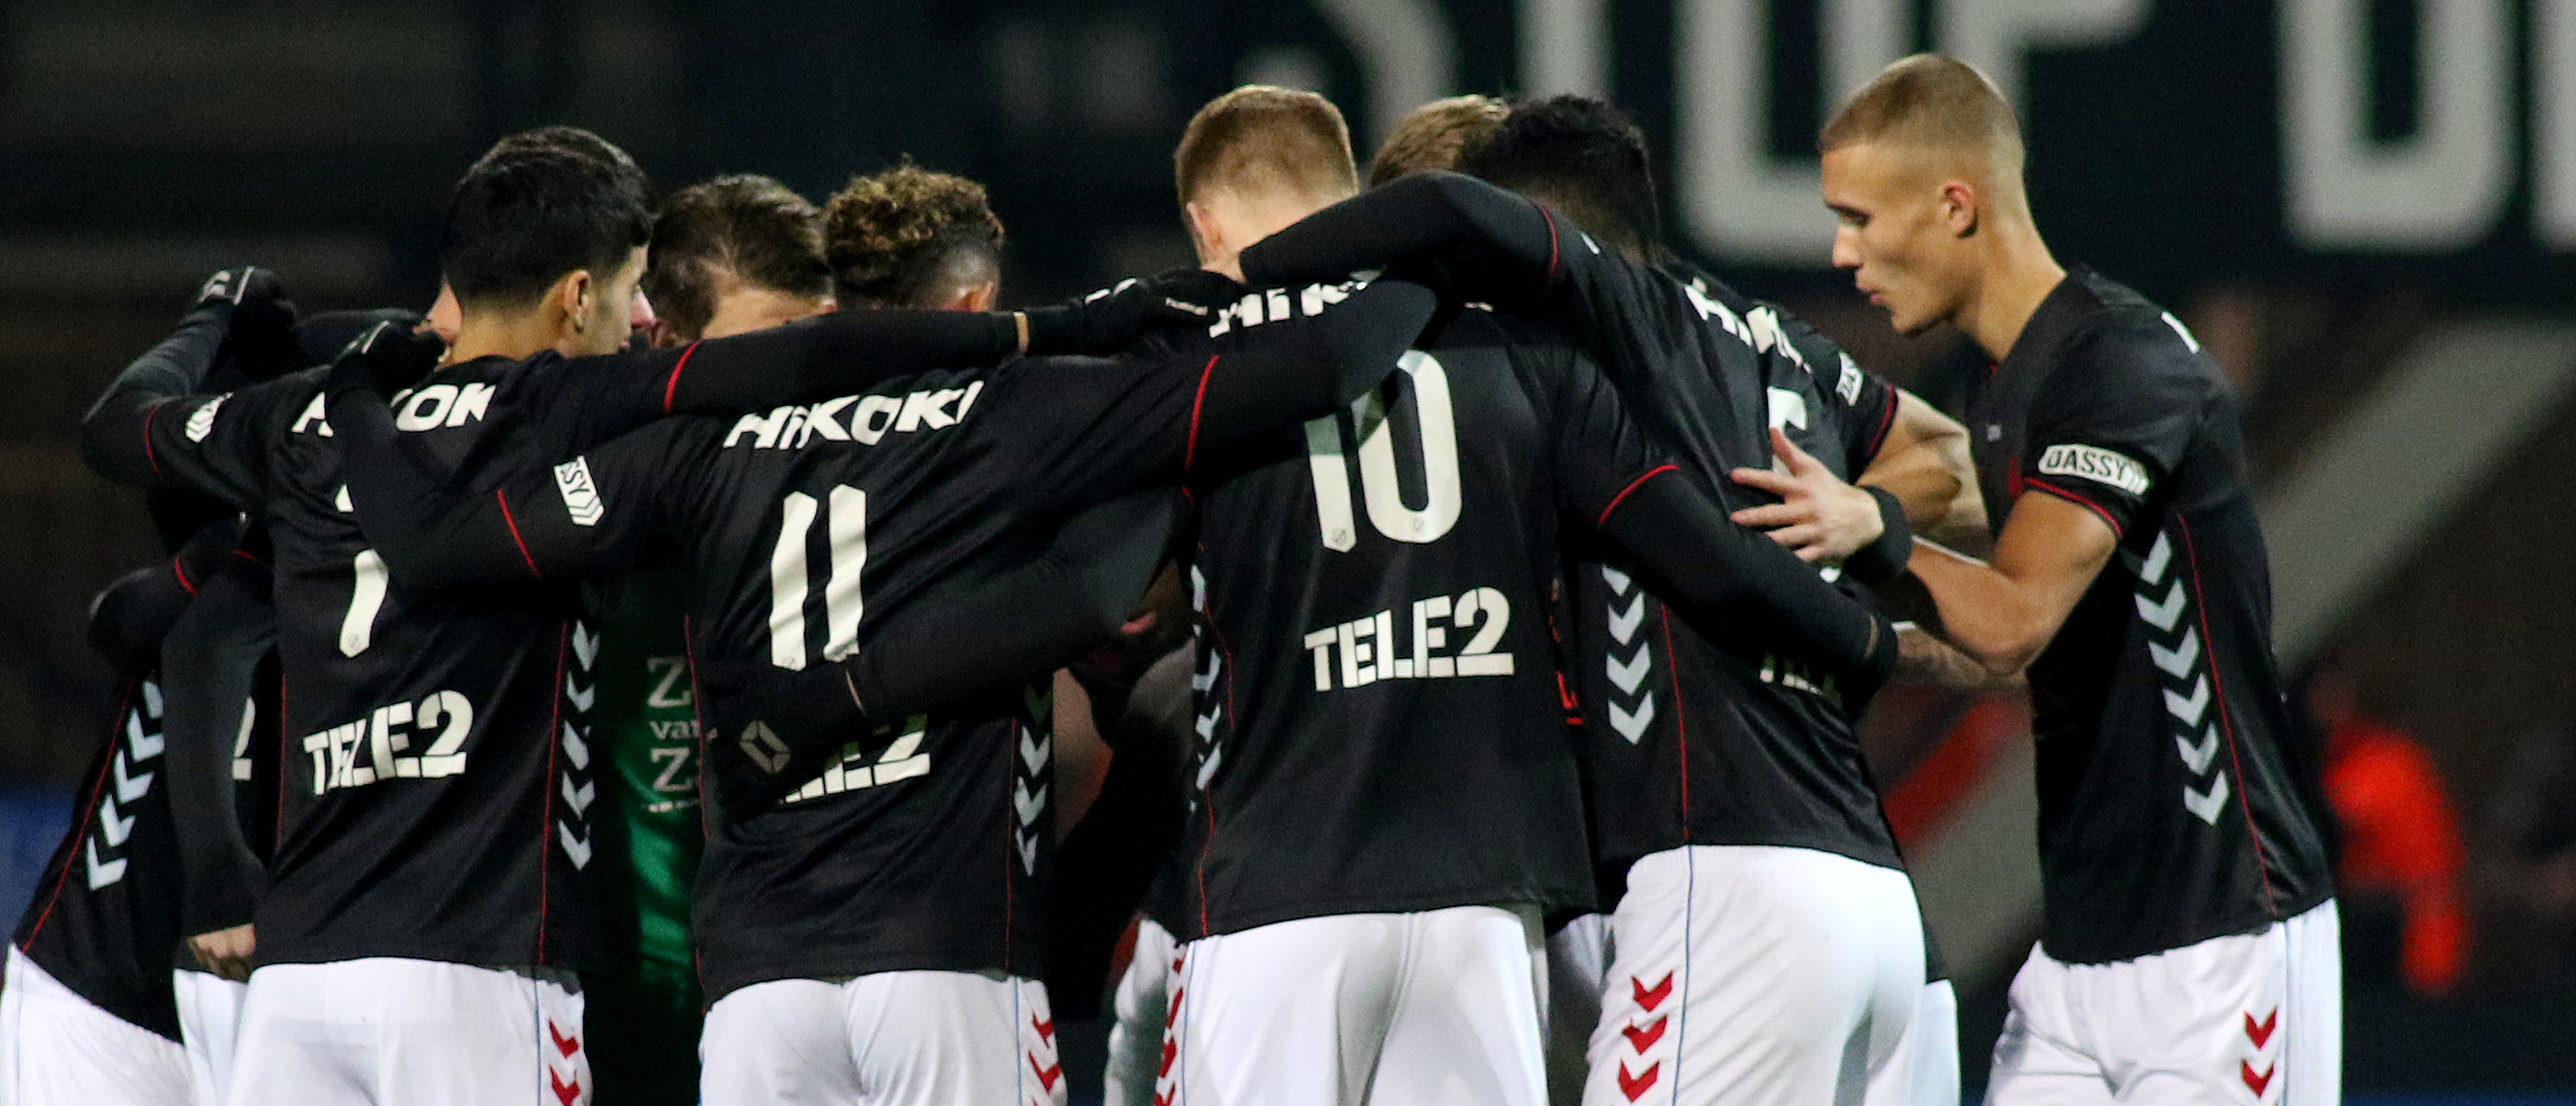 Jong FC Utrecht op De Toekomst tegen Jong Ajax